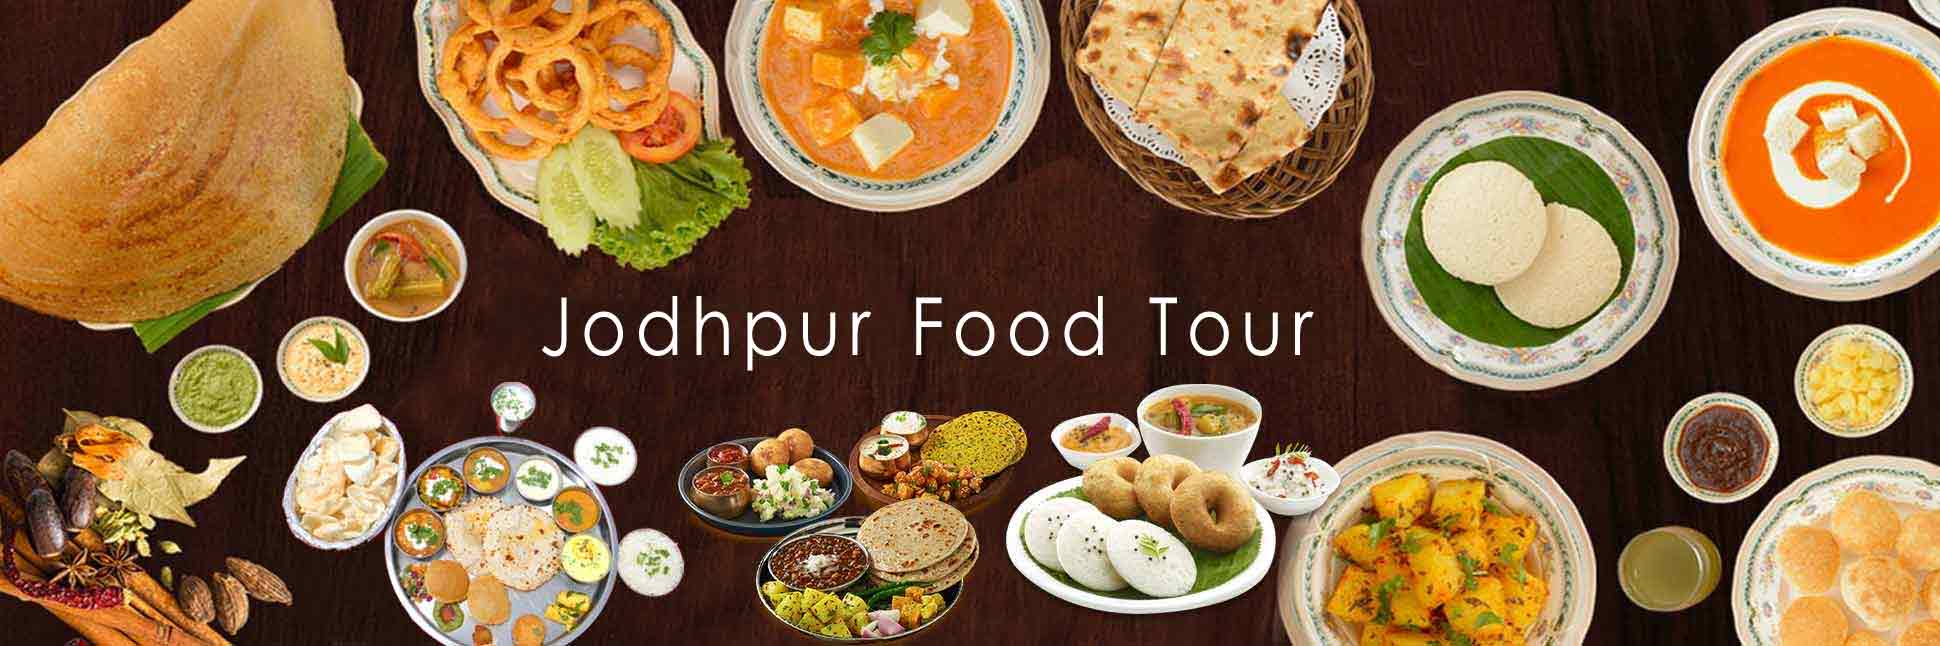 Jodhpur Food Tour